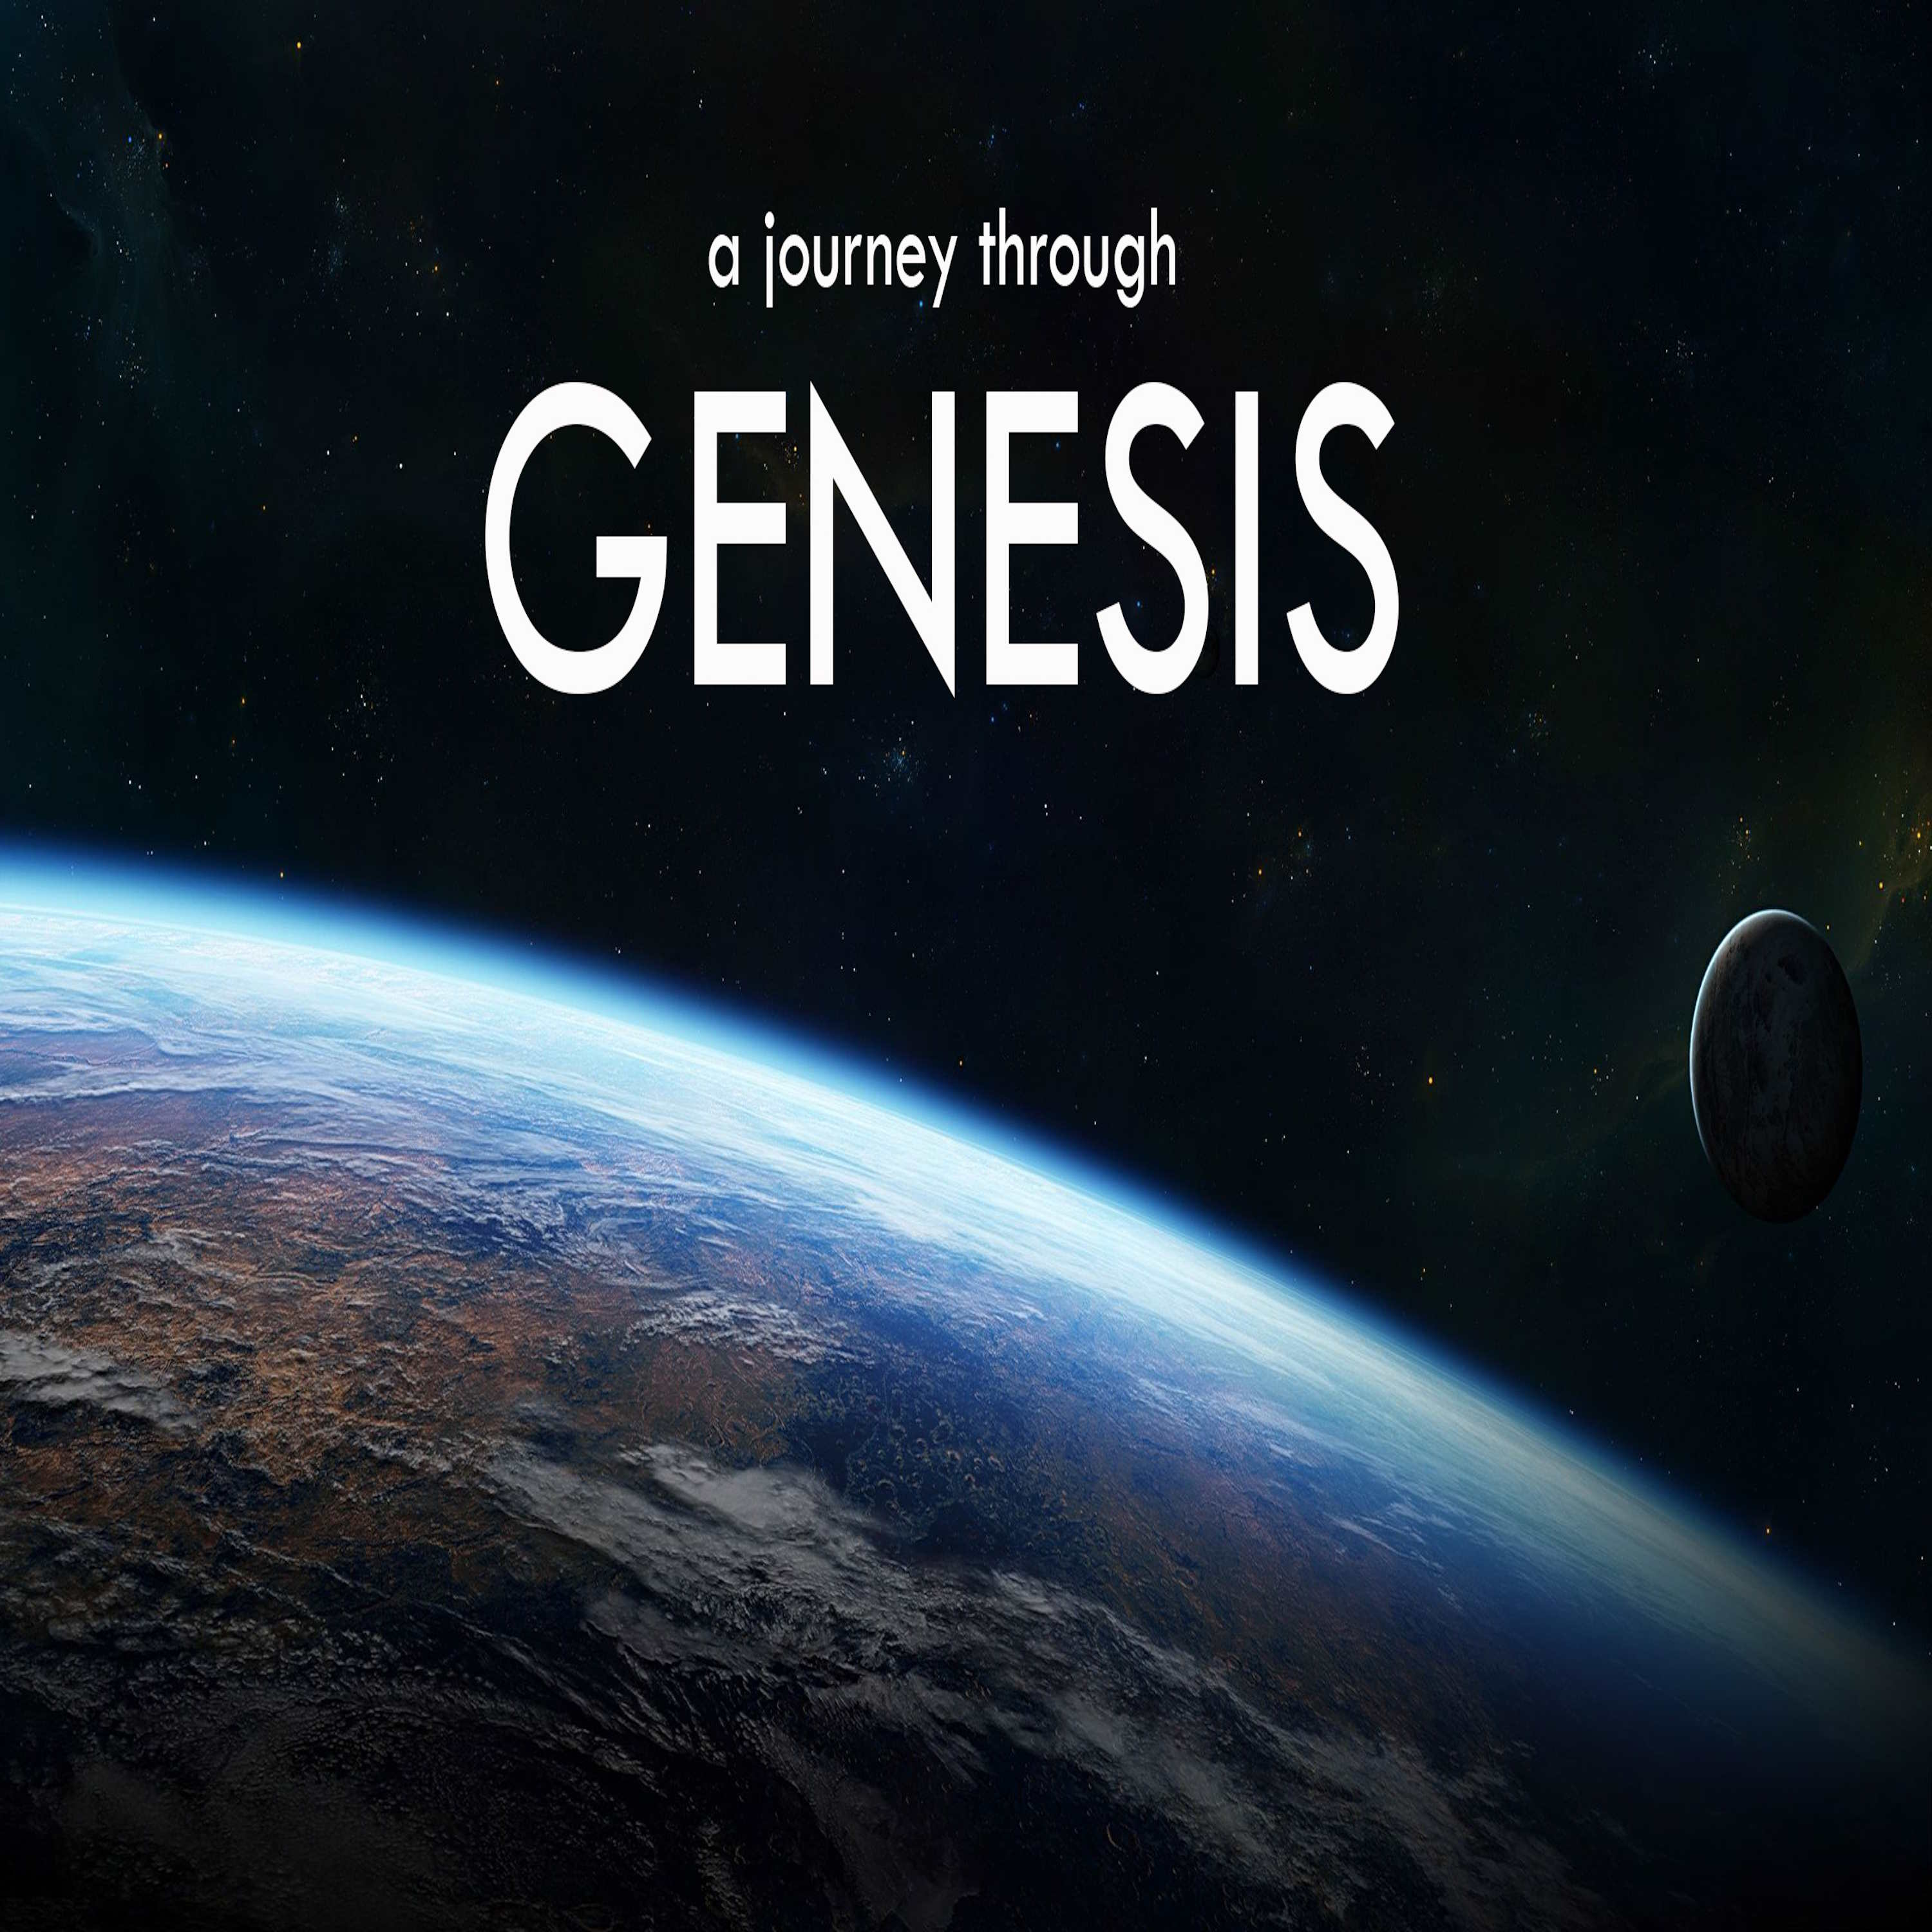 Genesis Creation Series: Don't Look Up (Genesis 1:14-19)